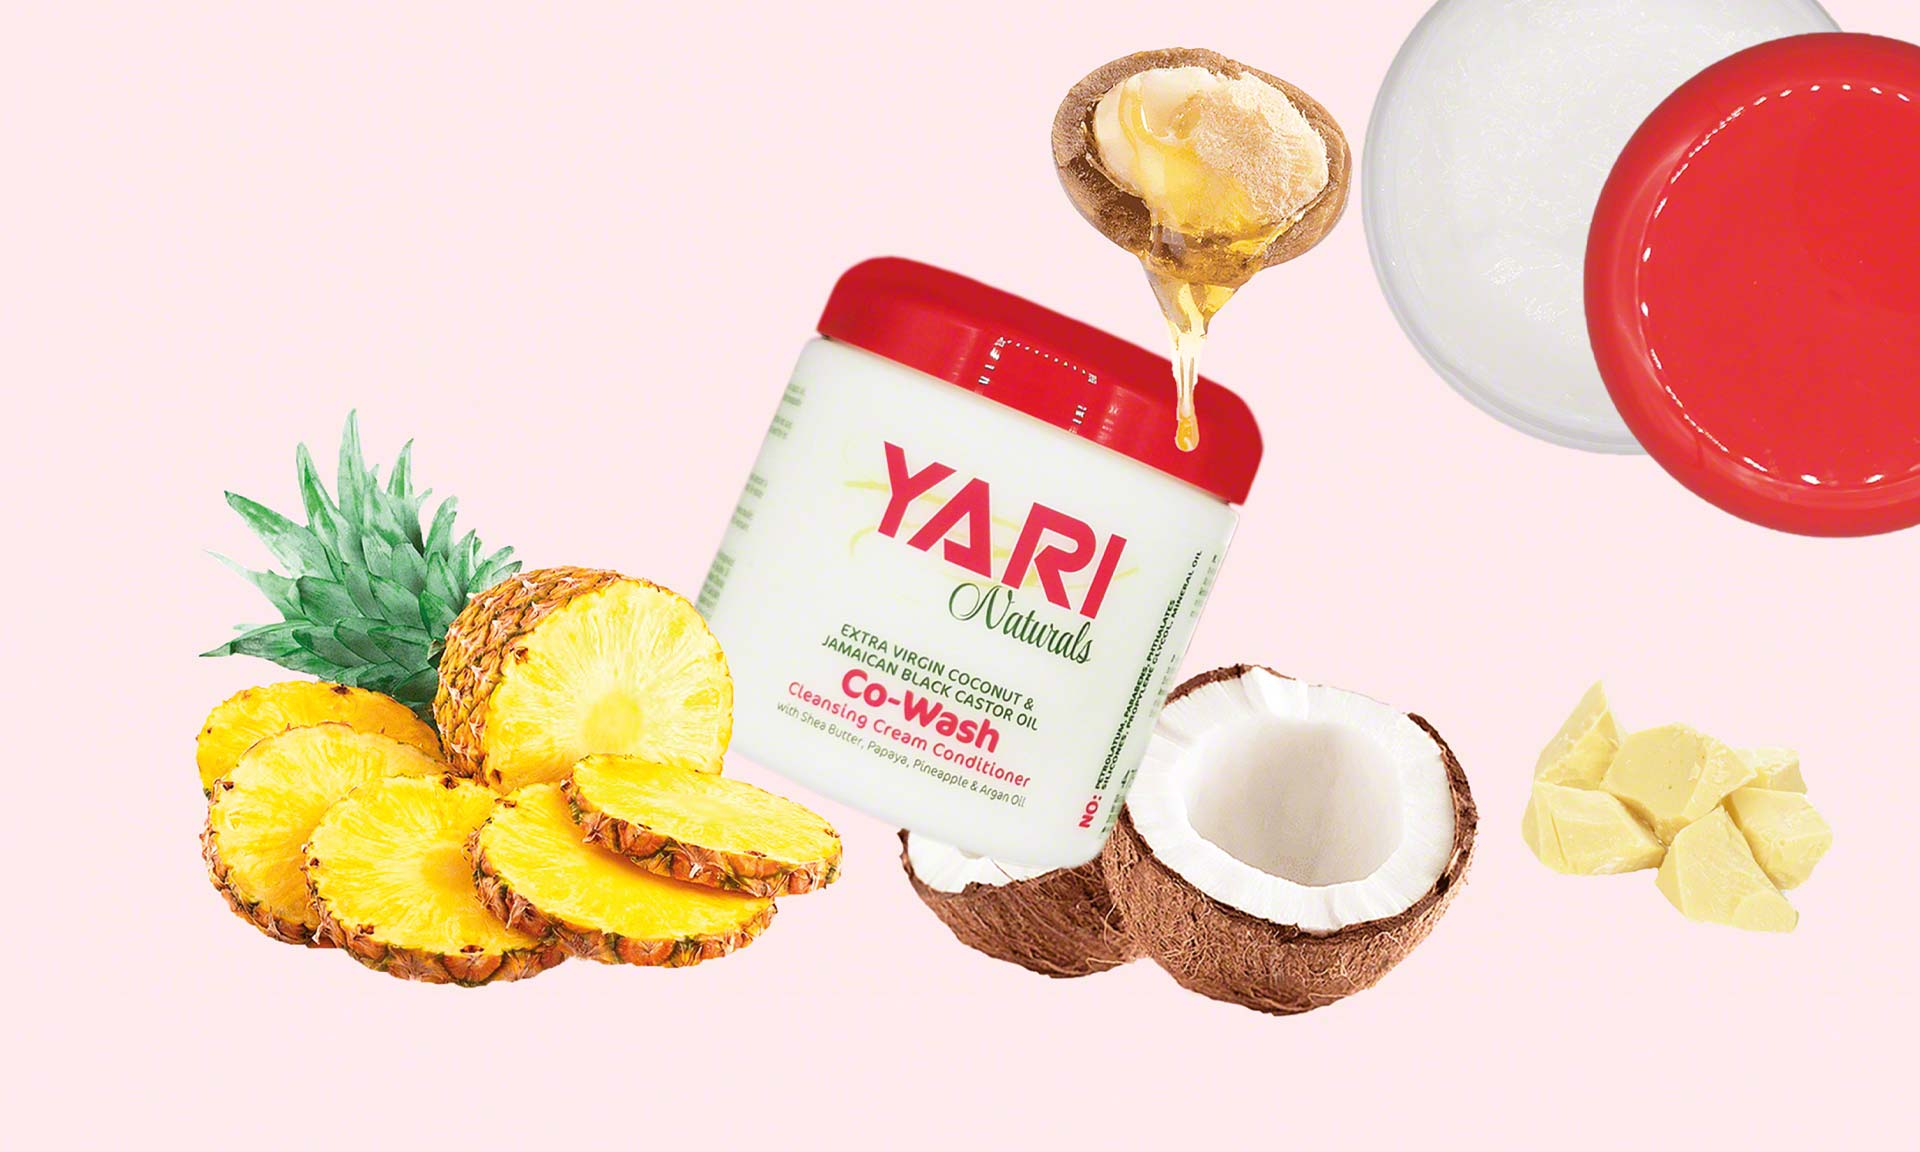 Kosmetikgroßhändler Yari digitalisiert seine Auftragsabwicklung